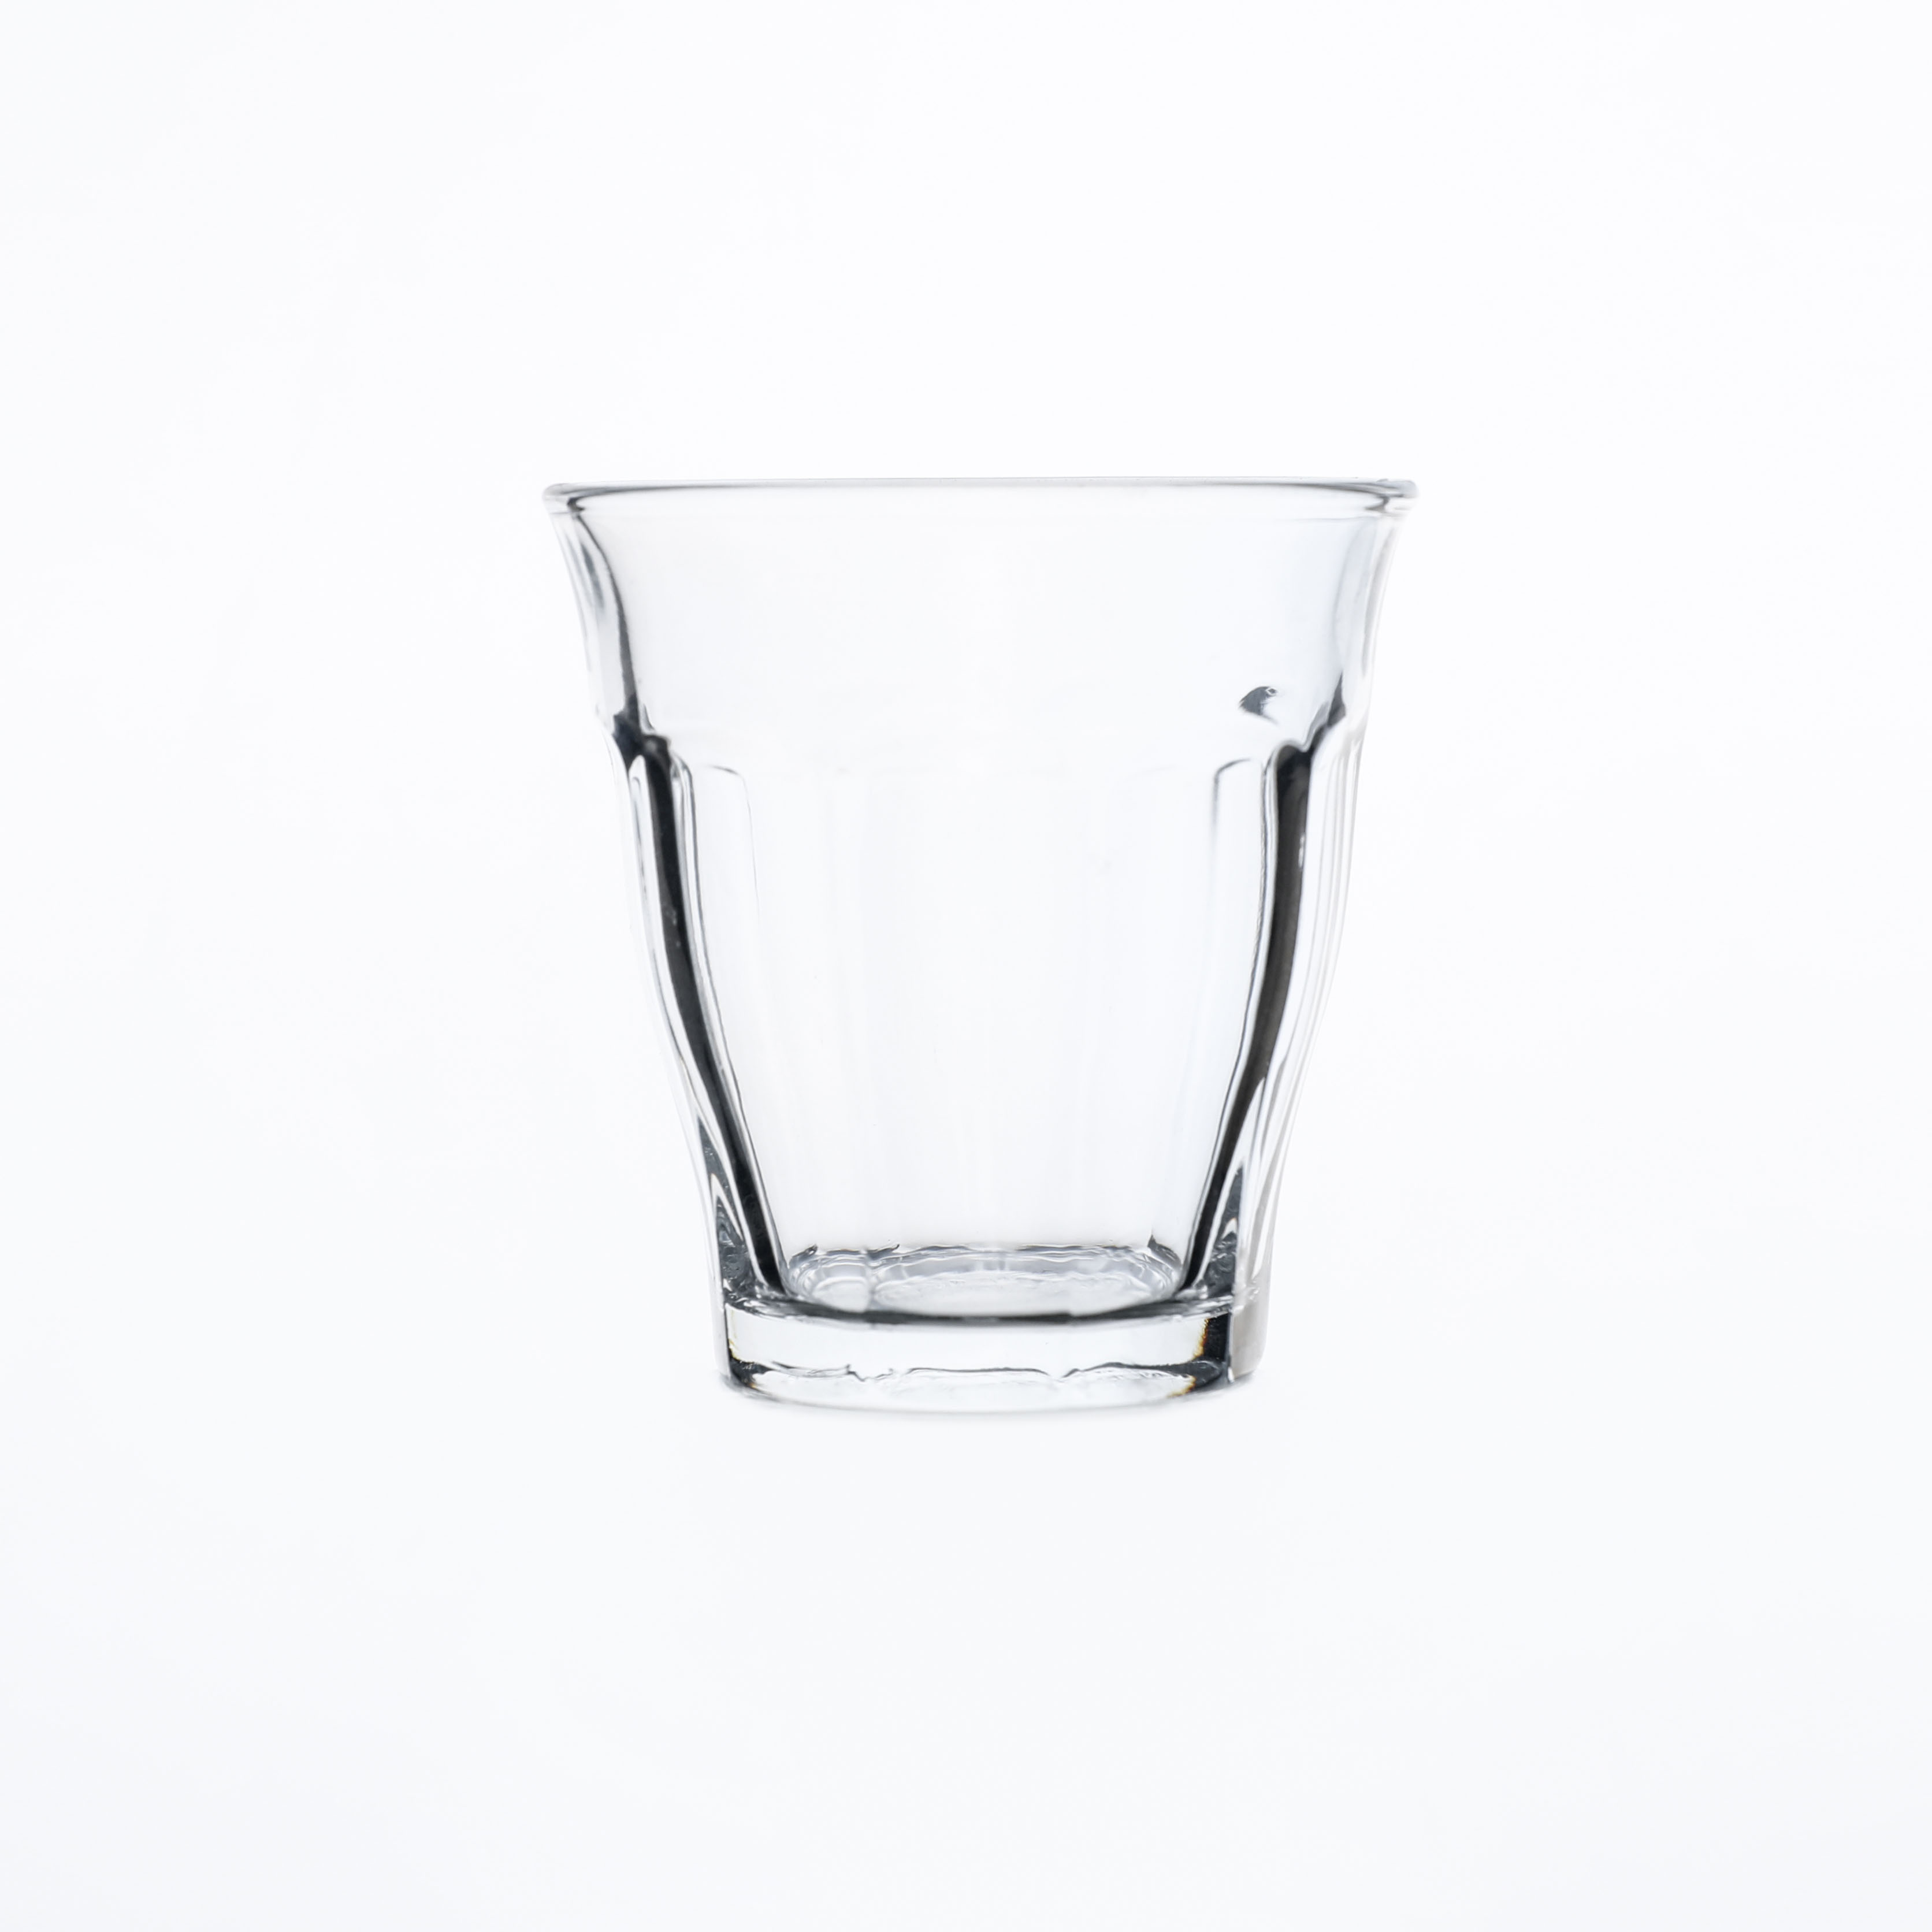 8 oz 220 ml čaša u obliku kamena Čaša za vodu Čaša za čašu za vino 01